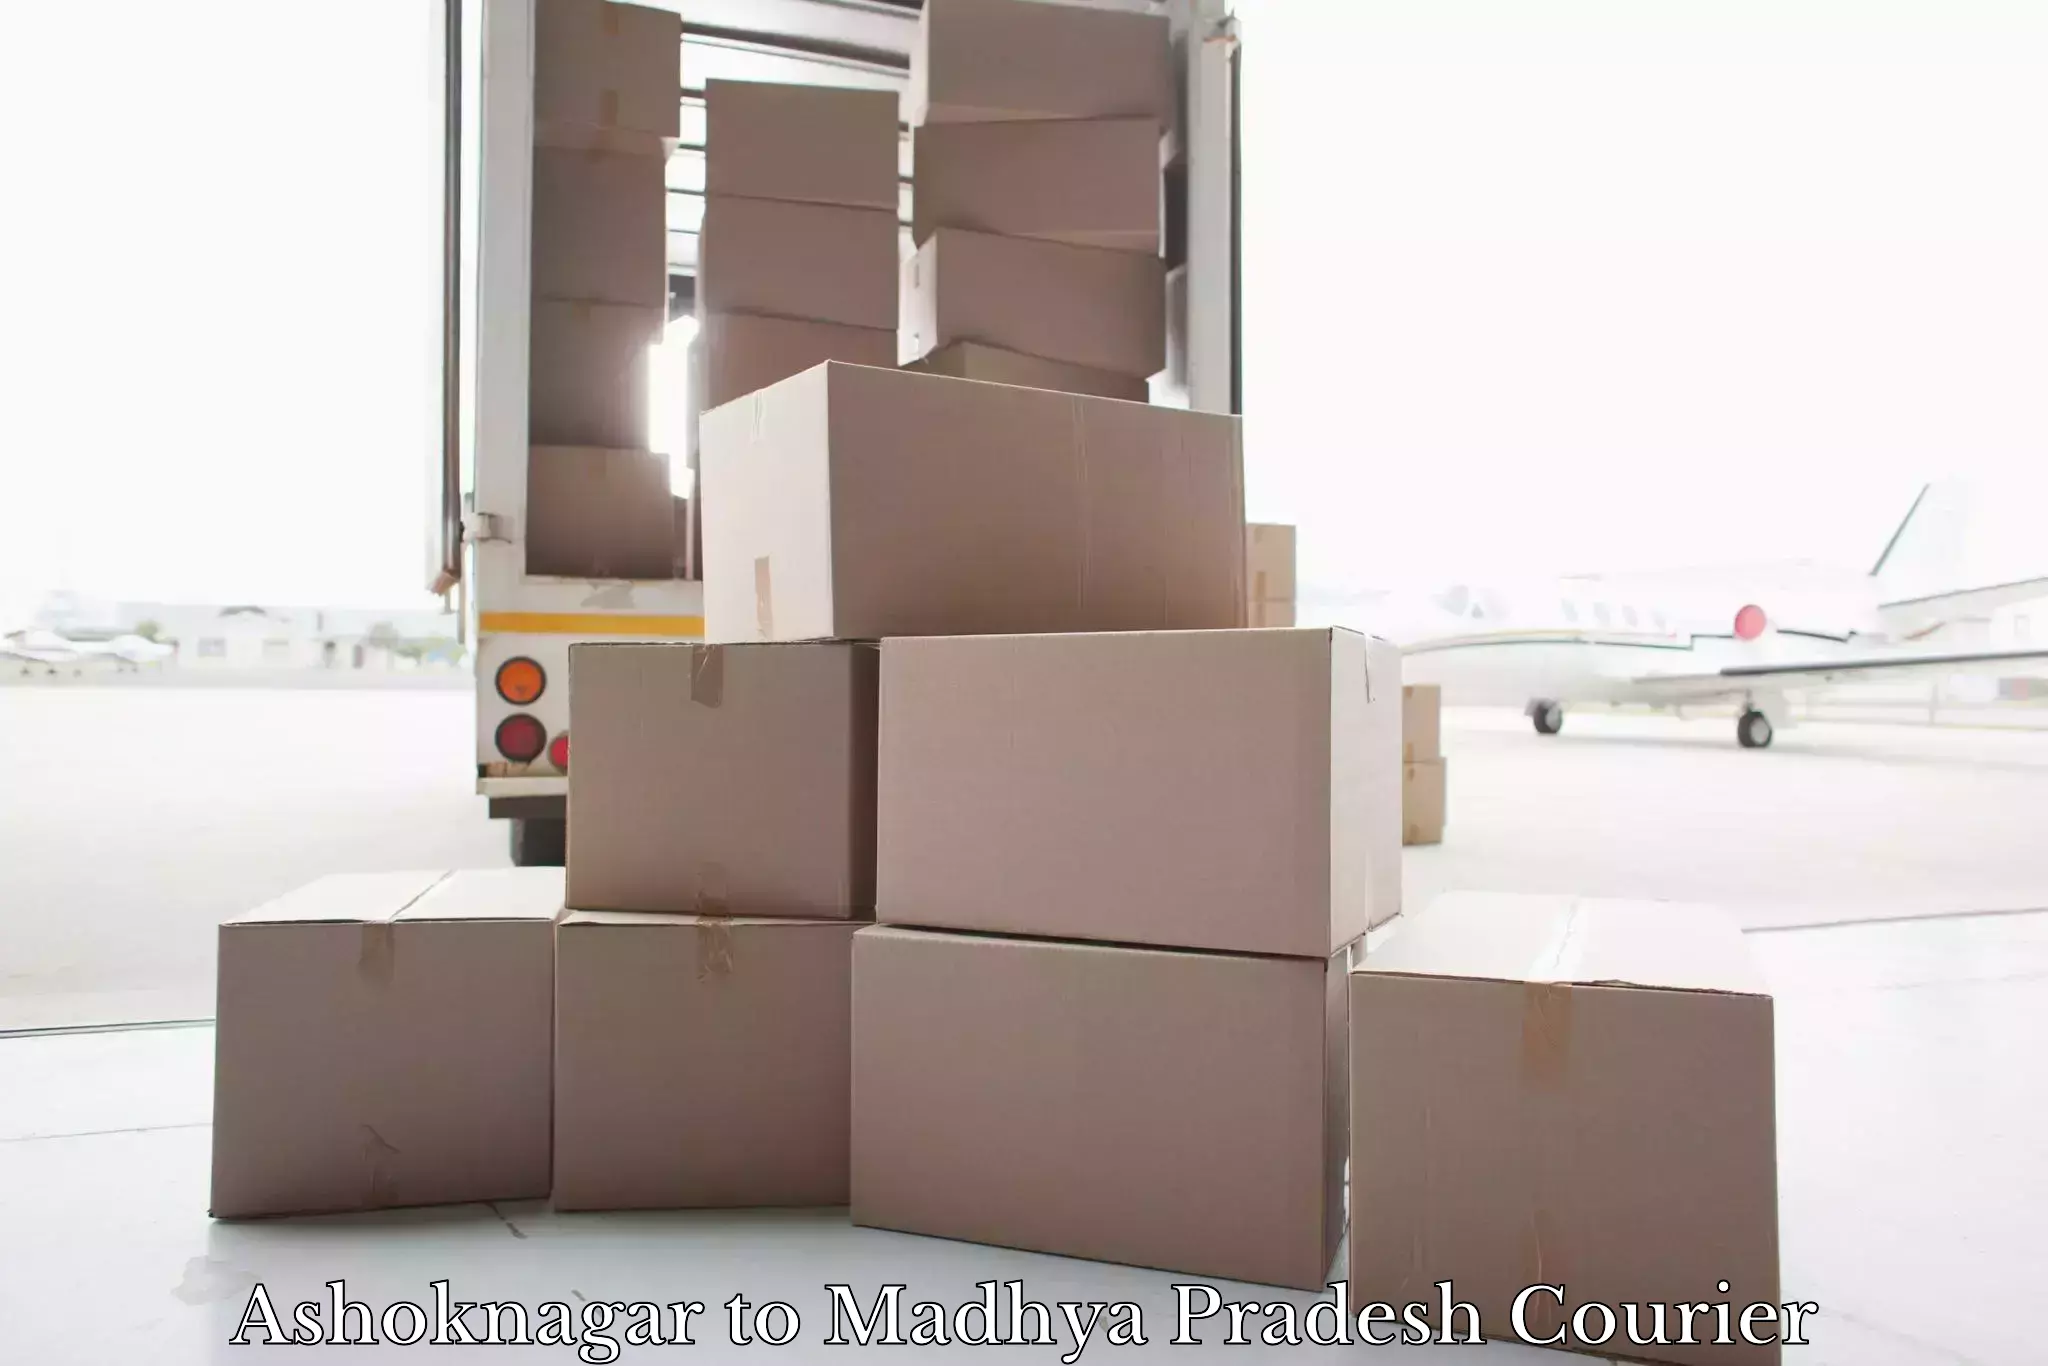 Luggage delivery network Ashoknagar to Ranchha